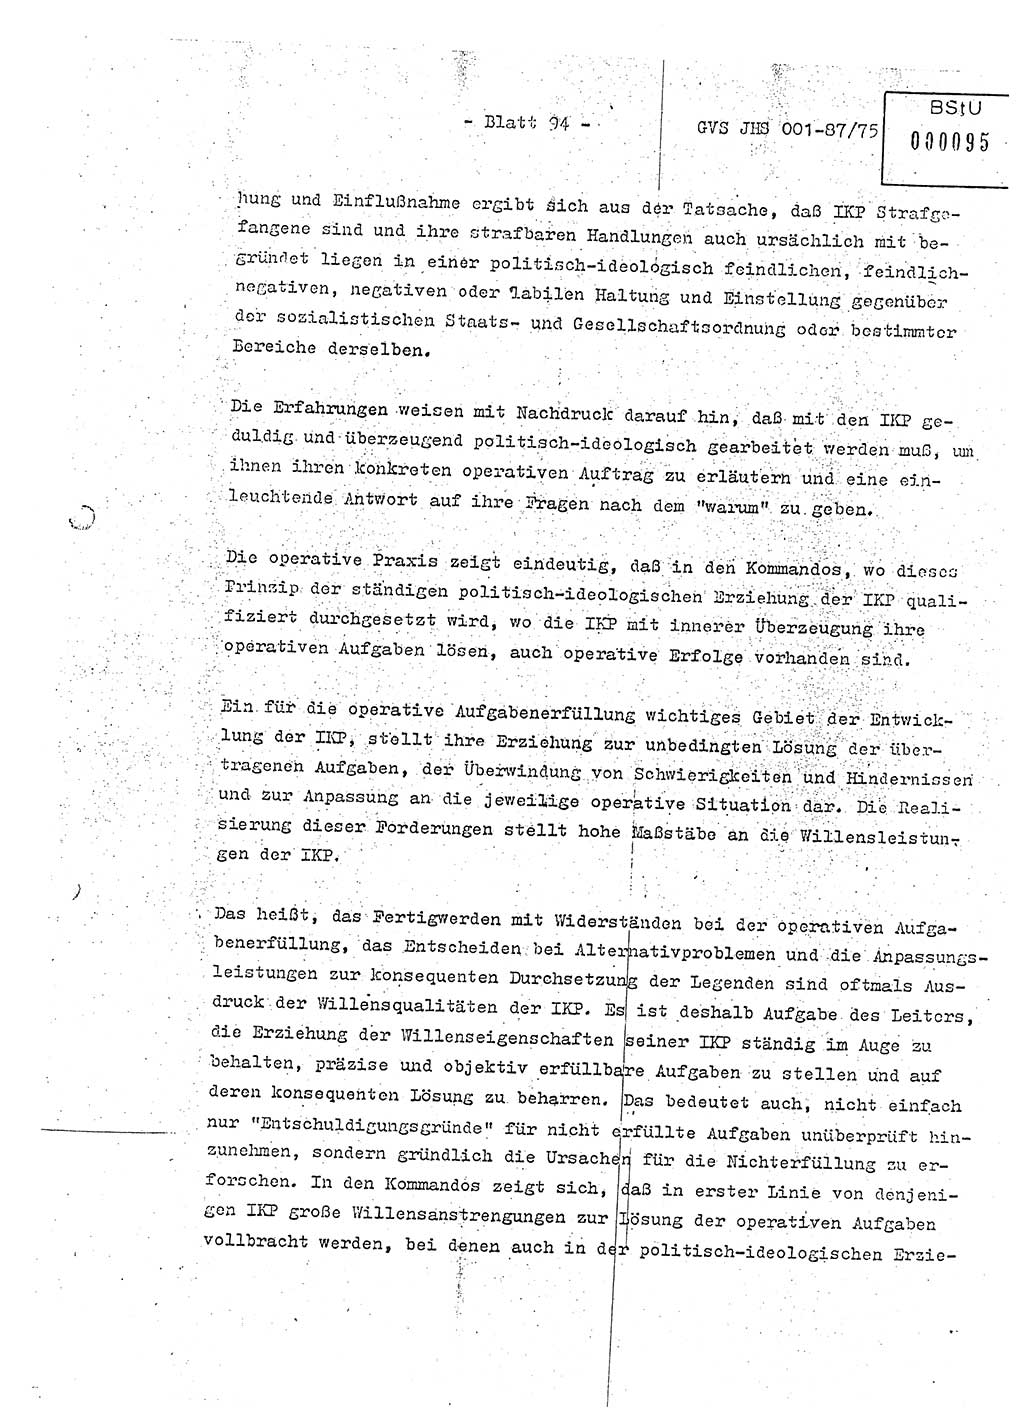 Diplomarbeit Hauptmann Volkmar Heinz (Abt. ⅩⅣ), Oberleutnant Lothar Rüdiger (BV Lpz. Abt. Ⅺ), Ministerium für Staatssicherheit (MfS) [Deutsche Demokratische Republik (DDR)], Juristische Hochschule (JHS), Geheime Verschlußsache (GVS) o001-87/75, Potsdam 1975, Seite 94 (Dipl.-Arb. MfS DDR JHS GVS o001-87/75 1975, S. 94)